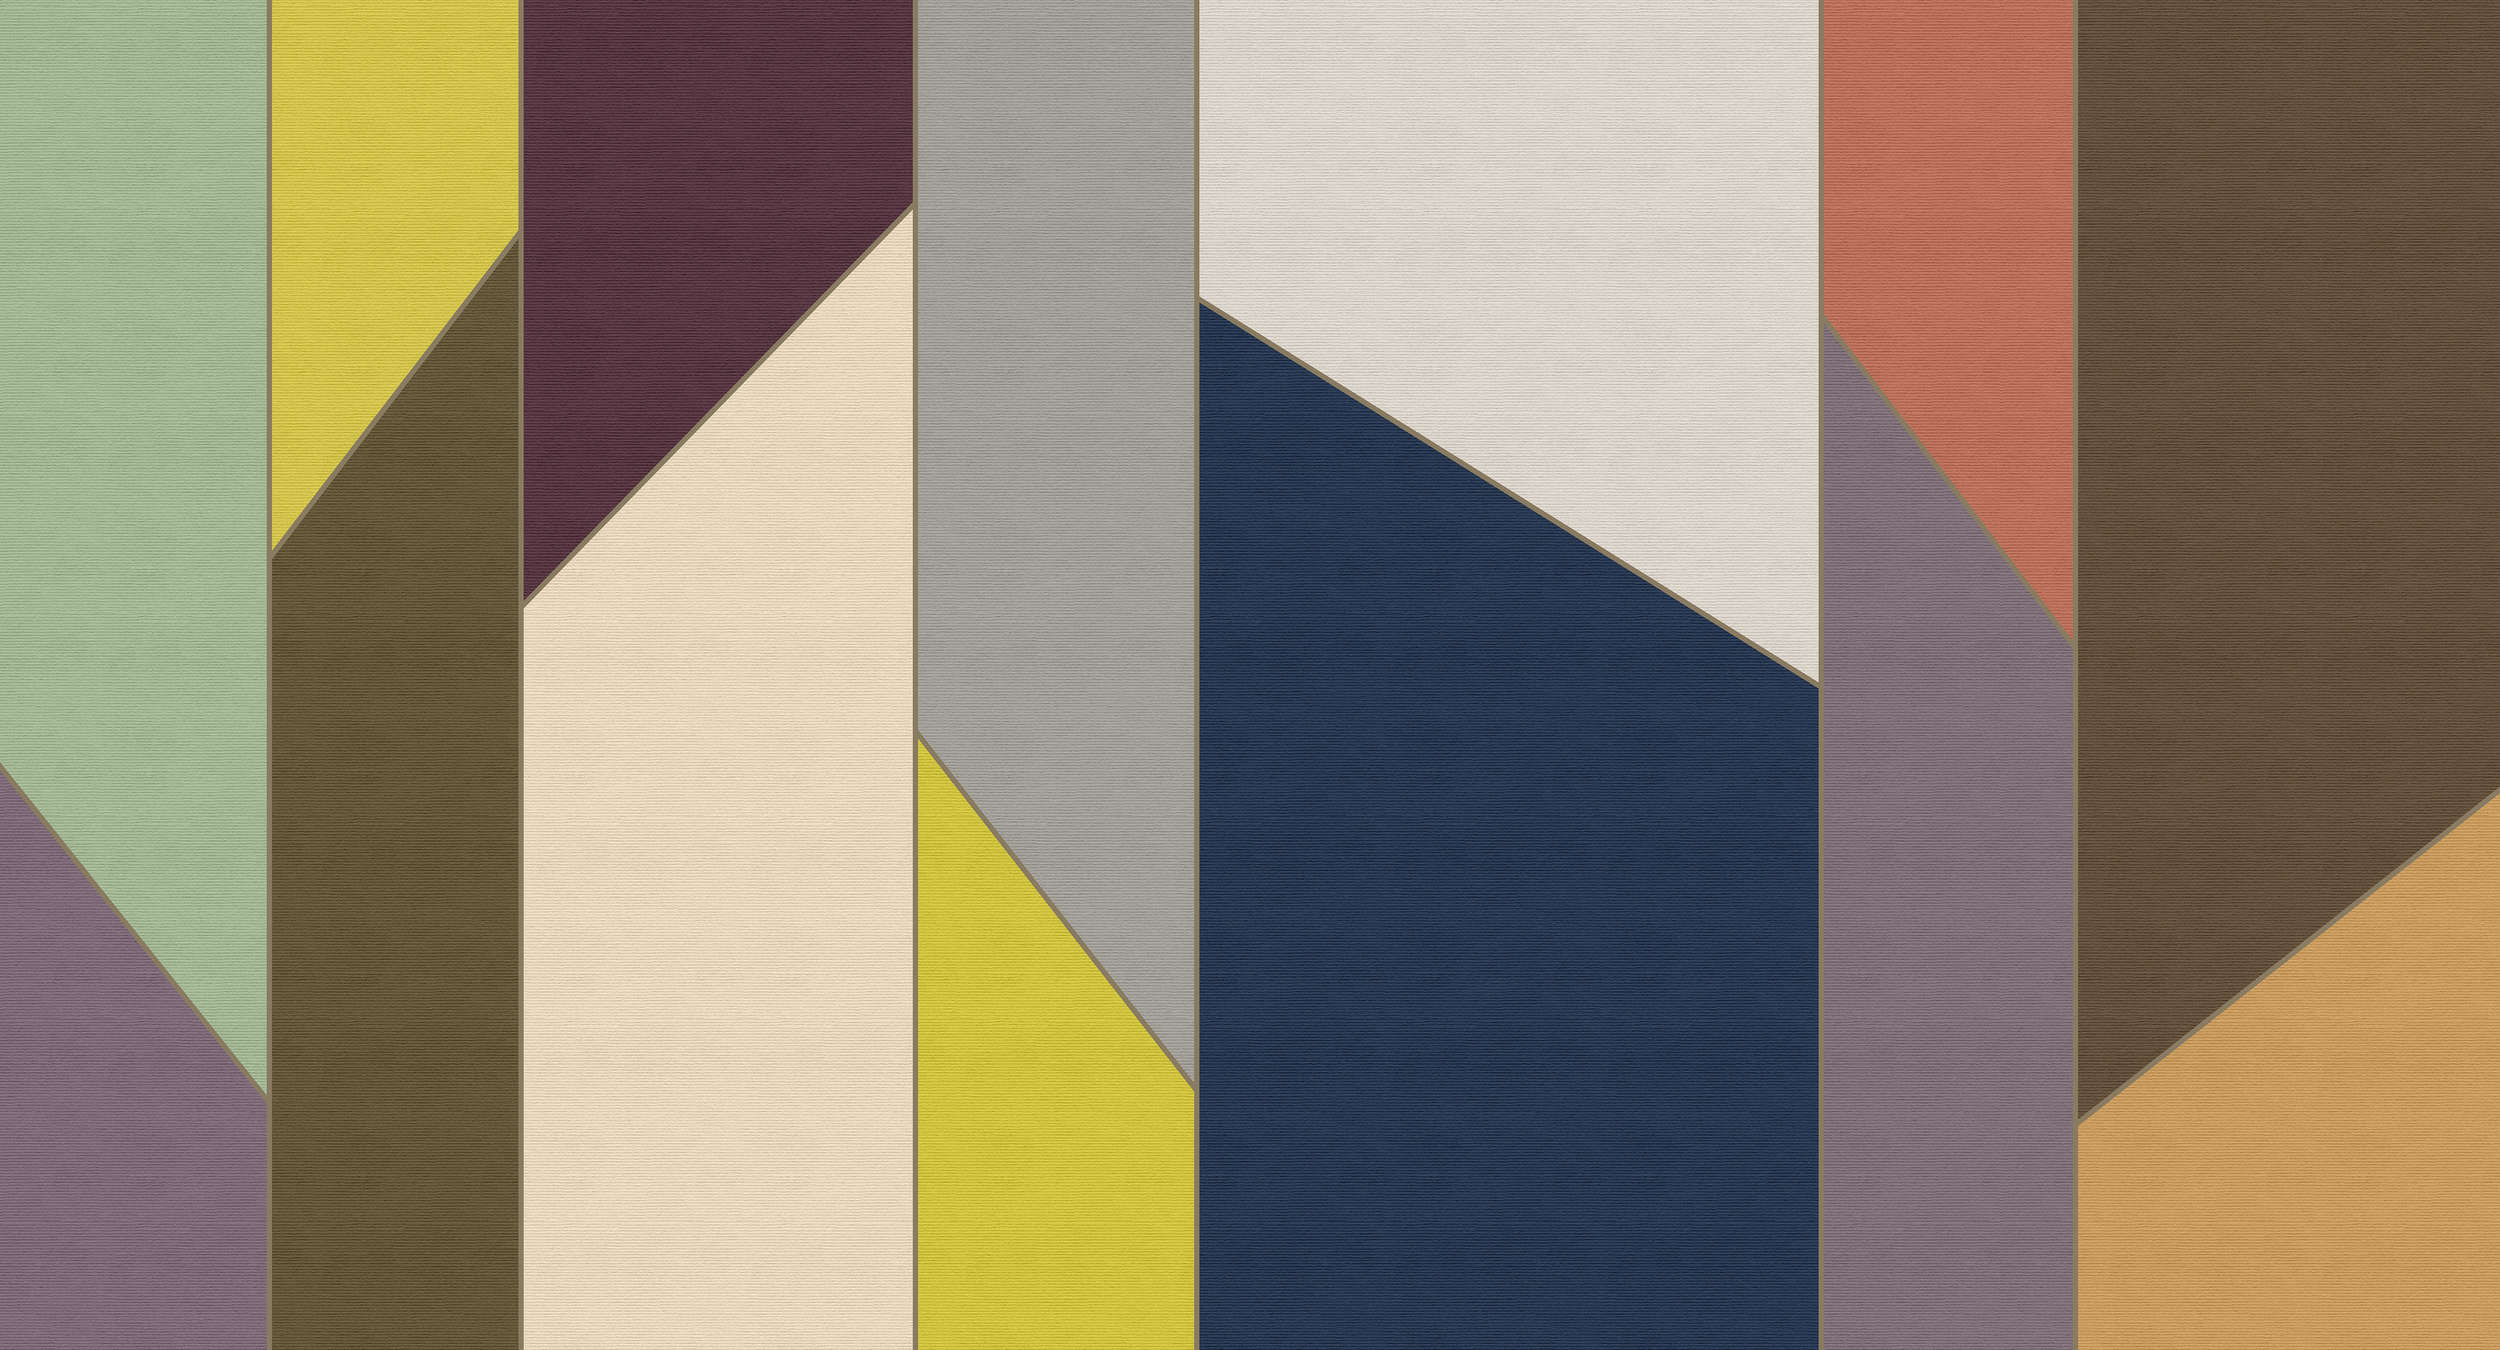             Geometry 4 - Stripe behang kleurrijk retro design in ribbelstructuur - Beige, Blauw | Strukturenvlies
        